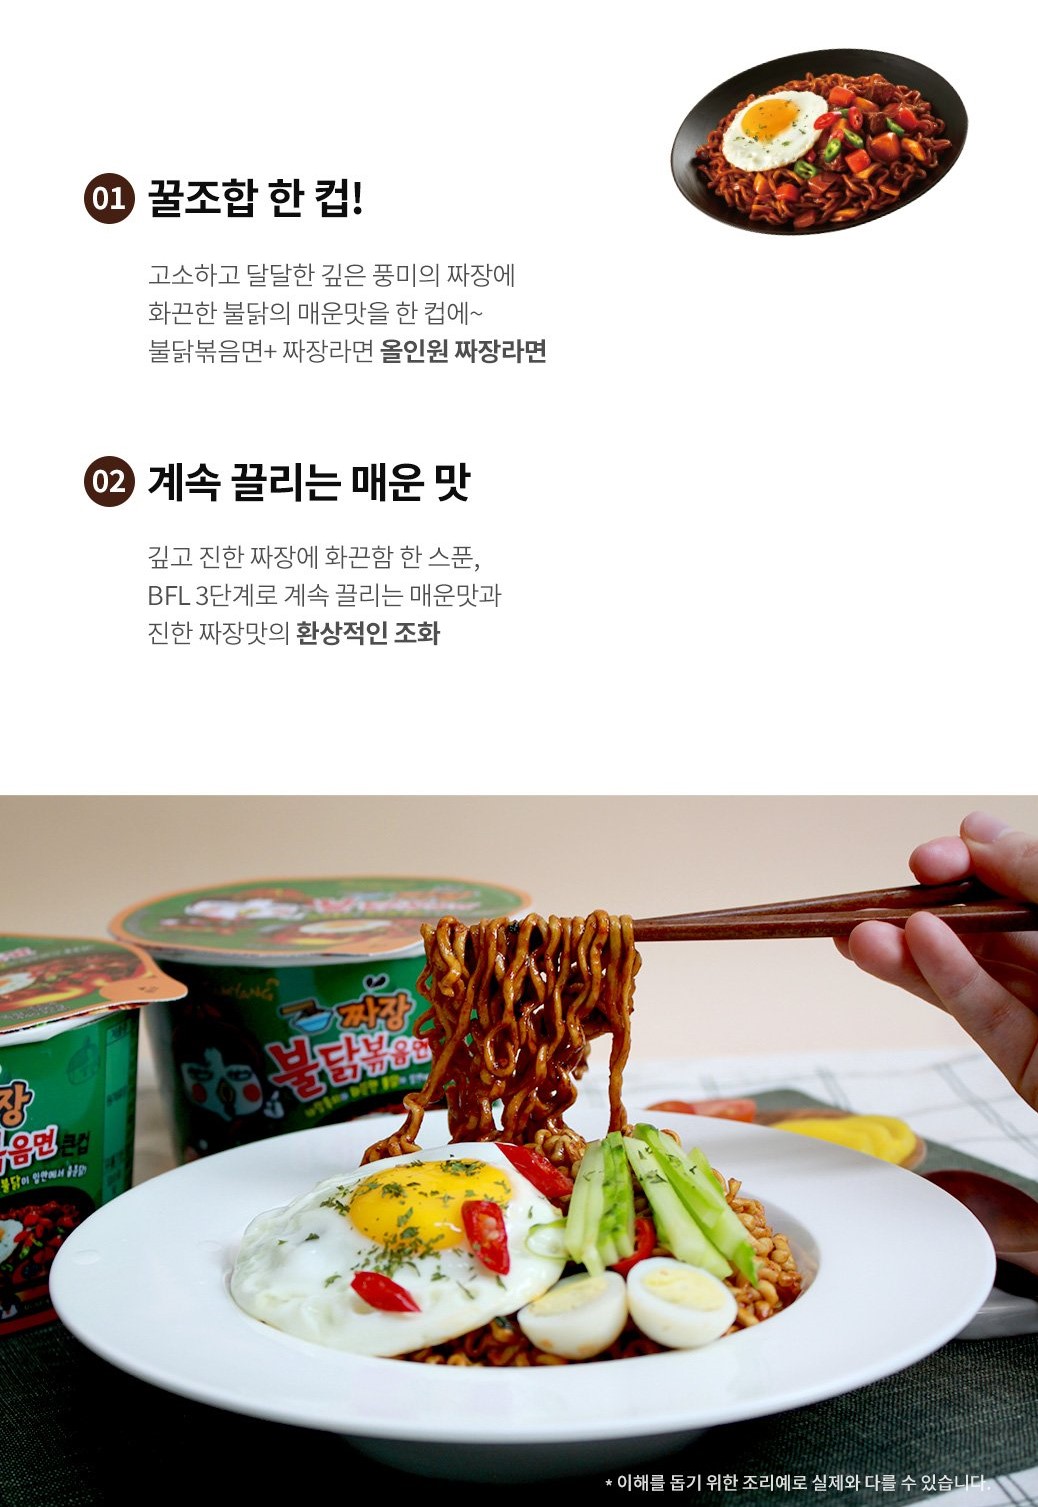 韓國食品-[Samyang] Hot Spicy Instant Cup Noodle (Jiajang) 105g